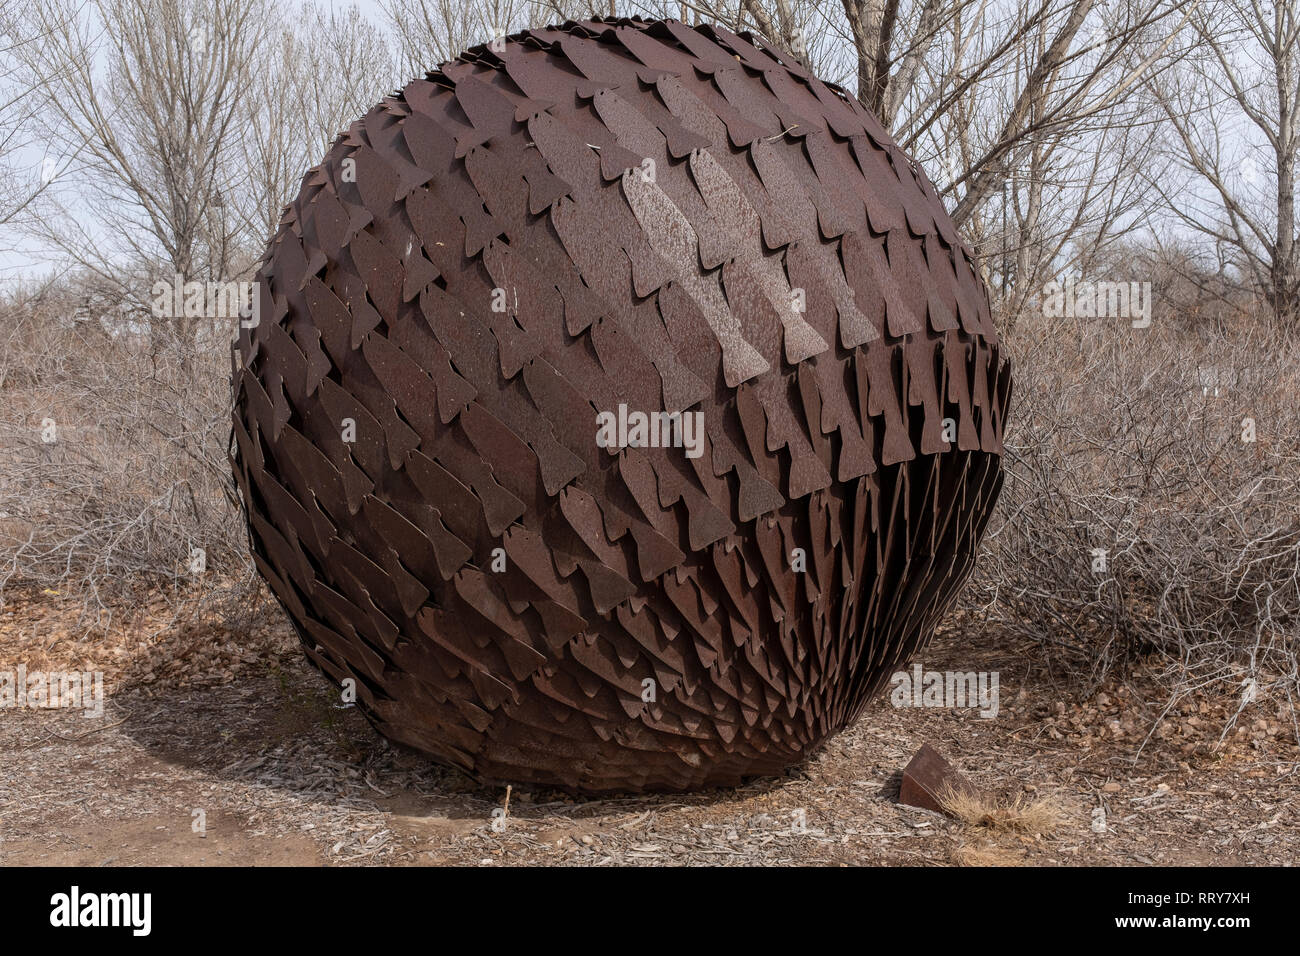 Sculpture art public par Colette Hosmer : 'Poisson' Globe, Tingley Beach, Albuquerque, Nouveau Mexique Banque D'Images